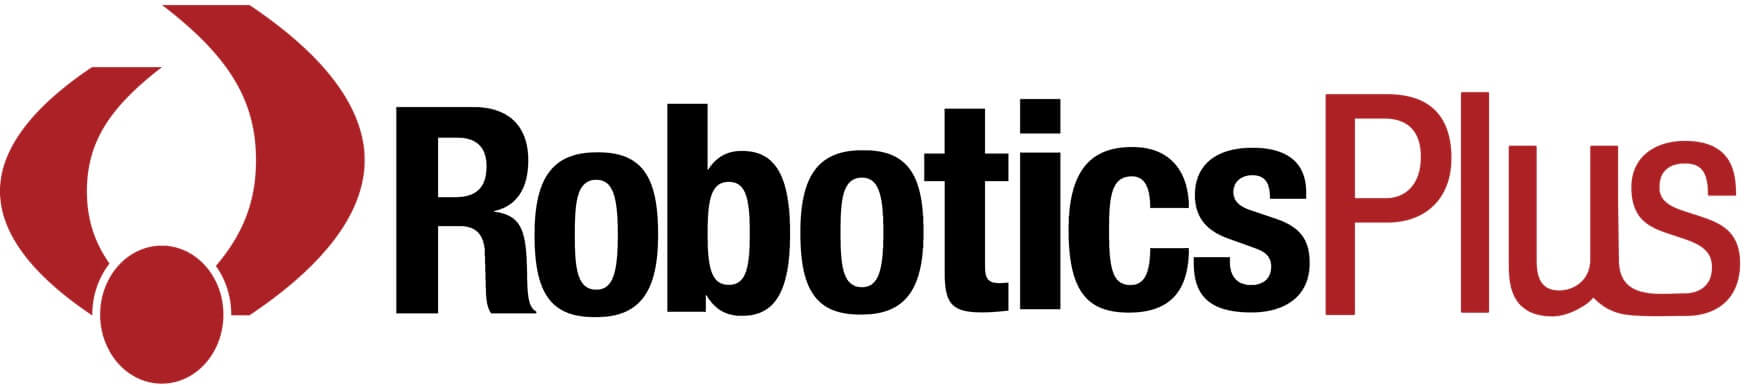 Robotics Plus logo